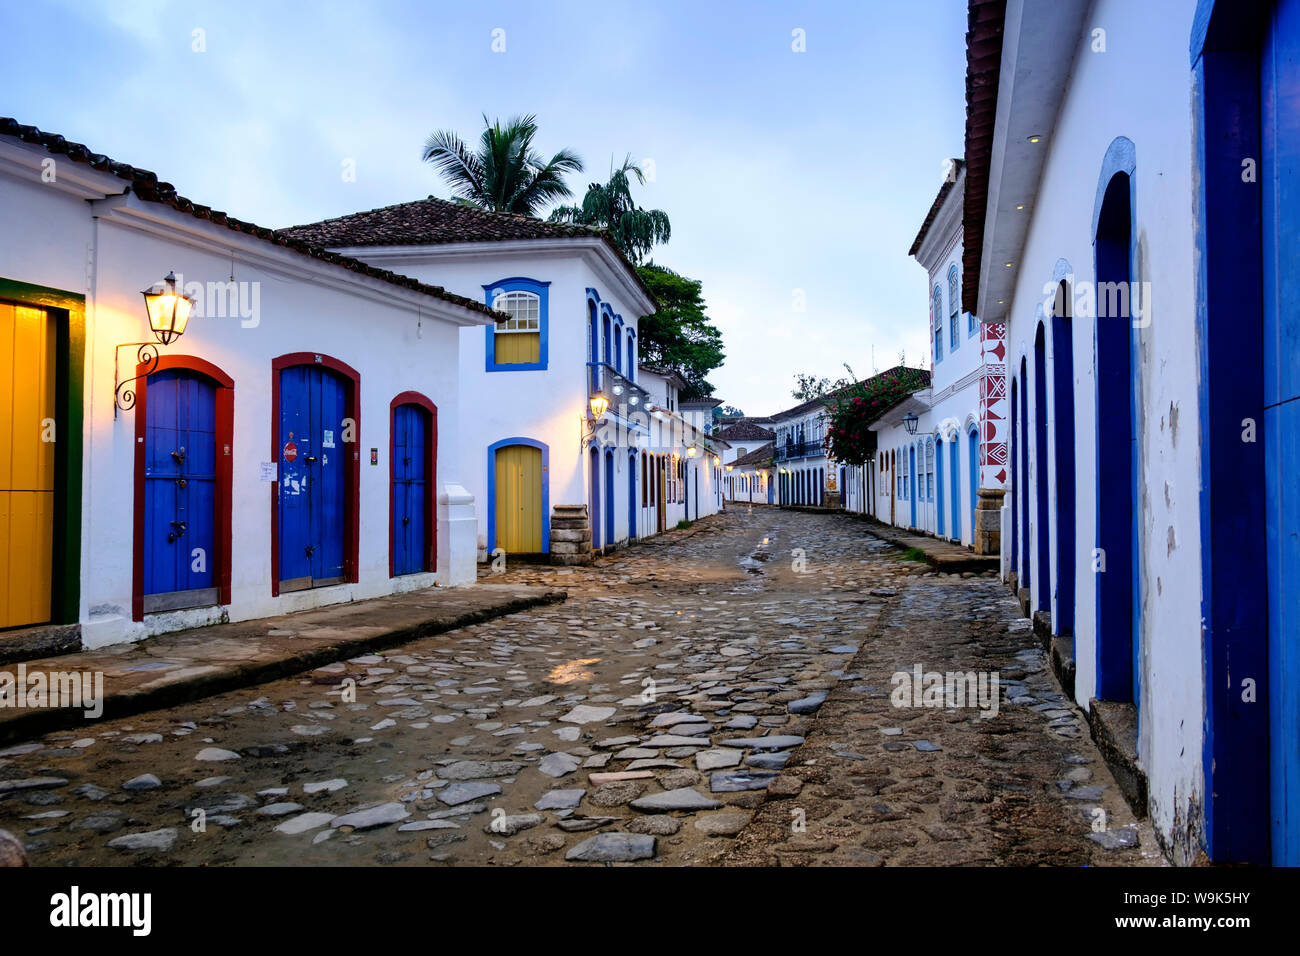 La arquitectura vernácula colonial portuguesa en el centro de Paraty (Parati) ciudad en la Costa Verde de Brasil, Estado de Rio de Janeiro, Brasil, América del Sur Foto de stock